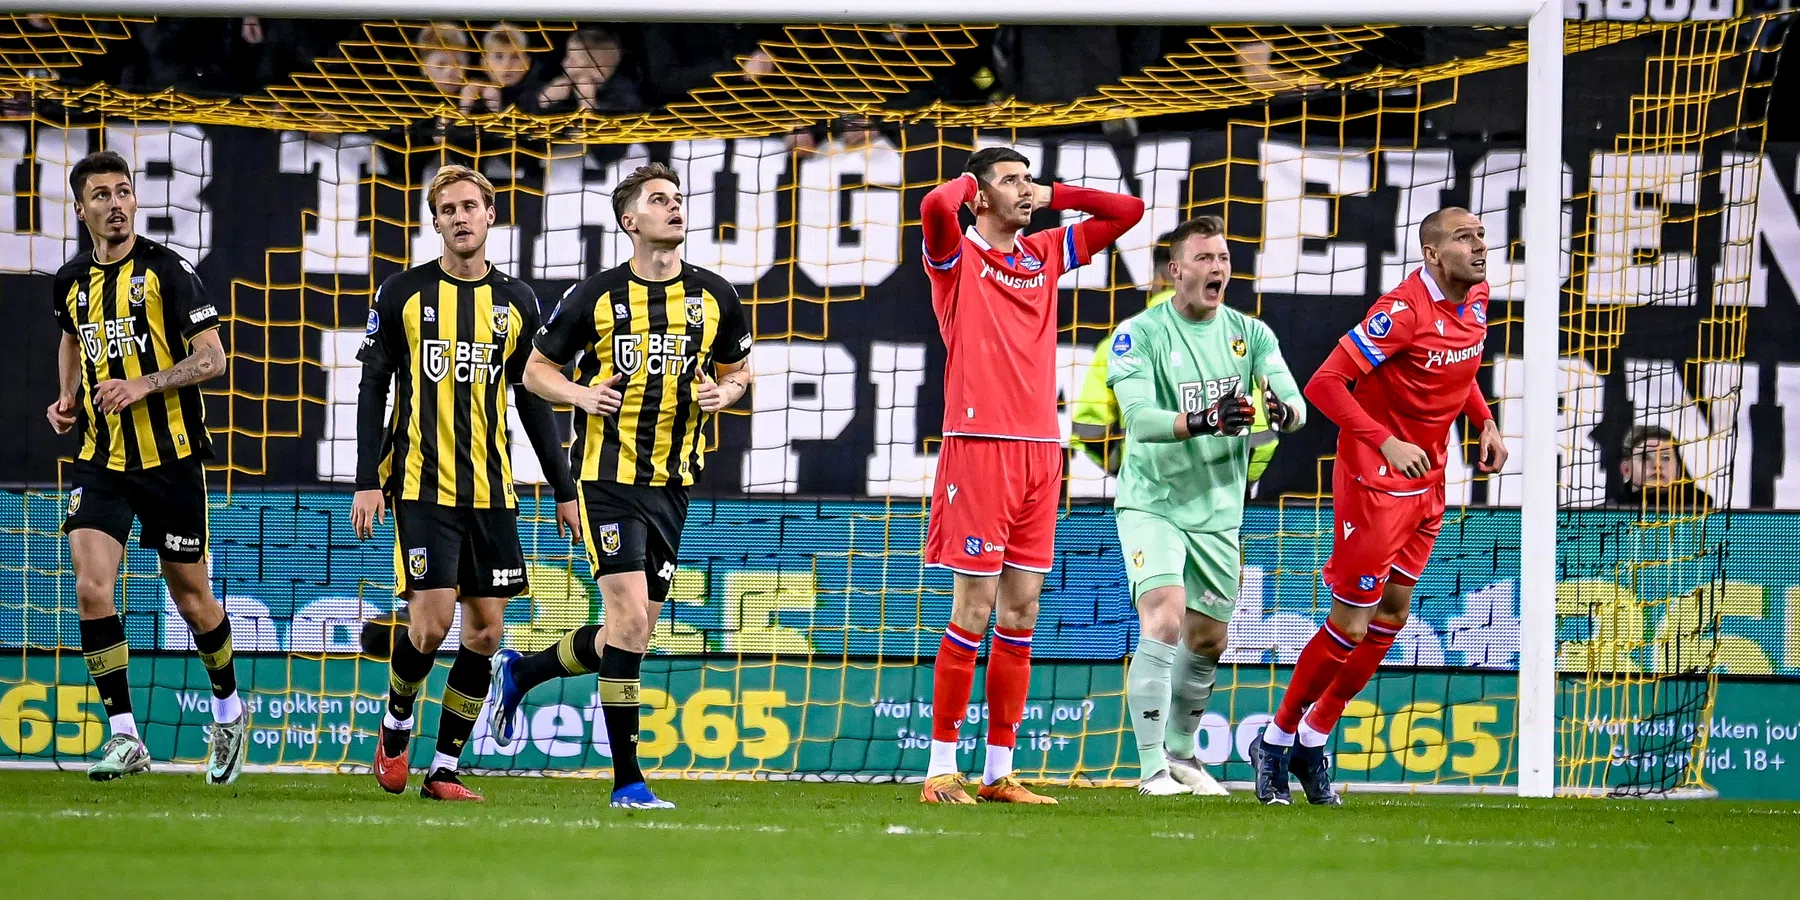 Eindelijk weer succesje voor Vitesse, tiental Almere wint maar net van amateurs